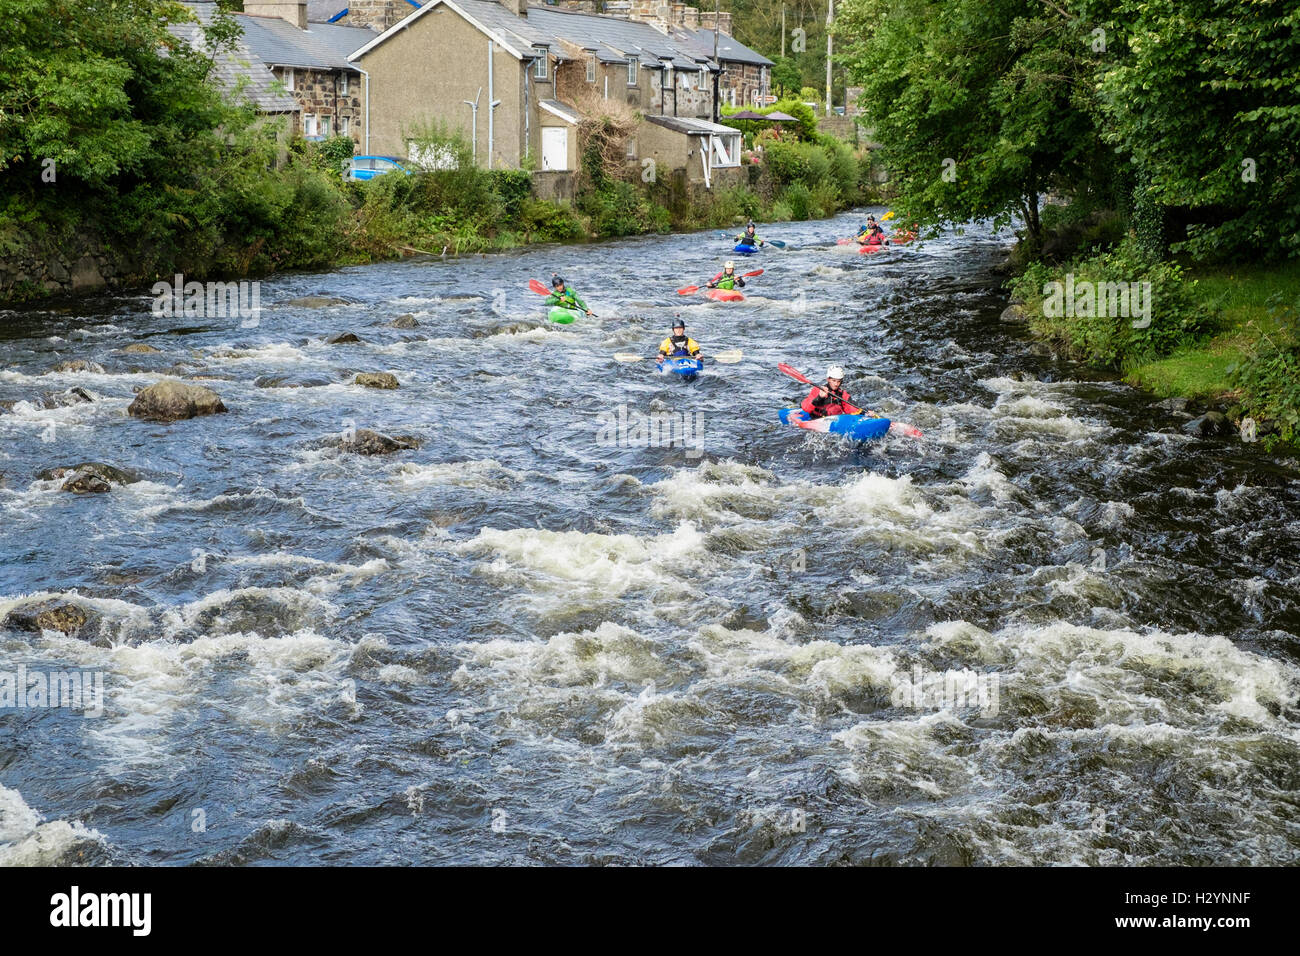 Un groupe de kayakistes en kayak kayaks Pyranha bas courant rapide de la rivière Glaslyn Afon de Snowdonia. Gwynedd au Pays de Galles UK Beddgelert Banque D'Images